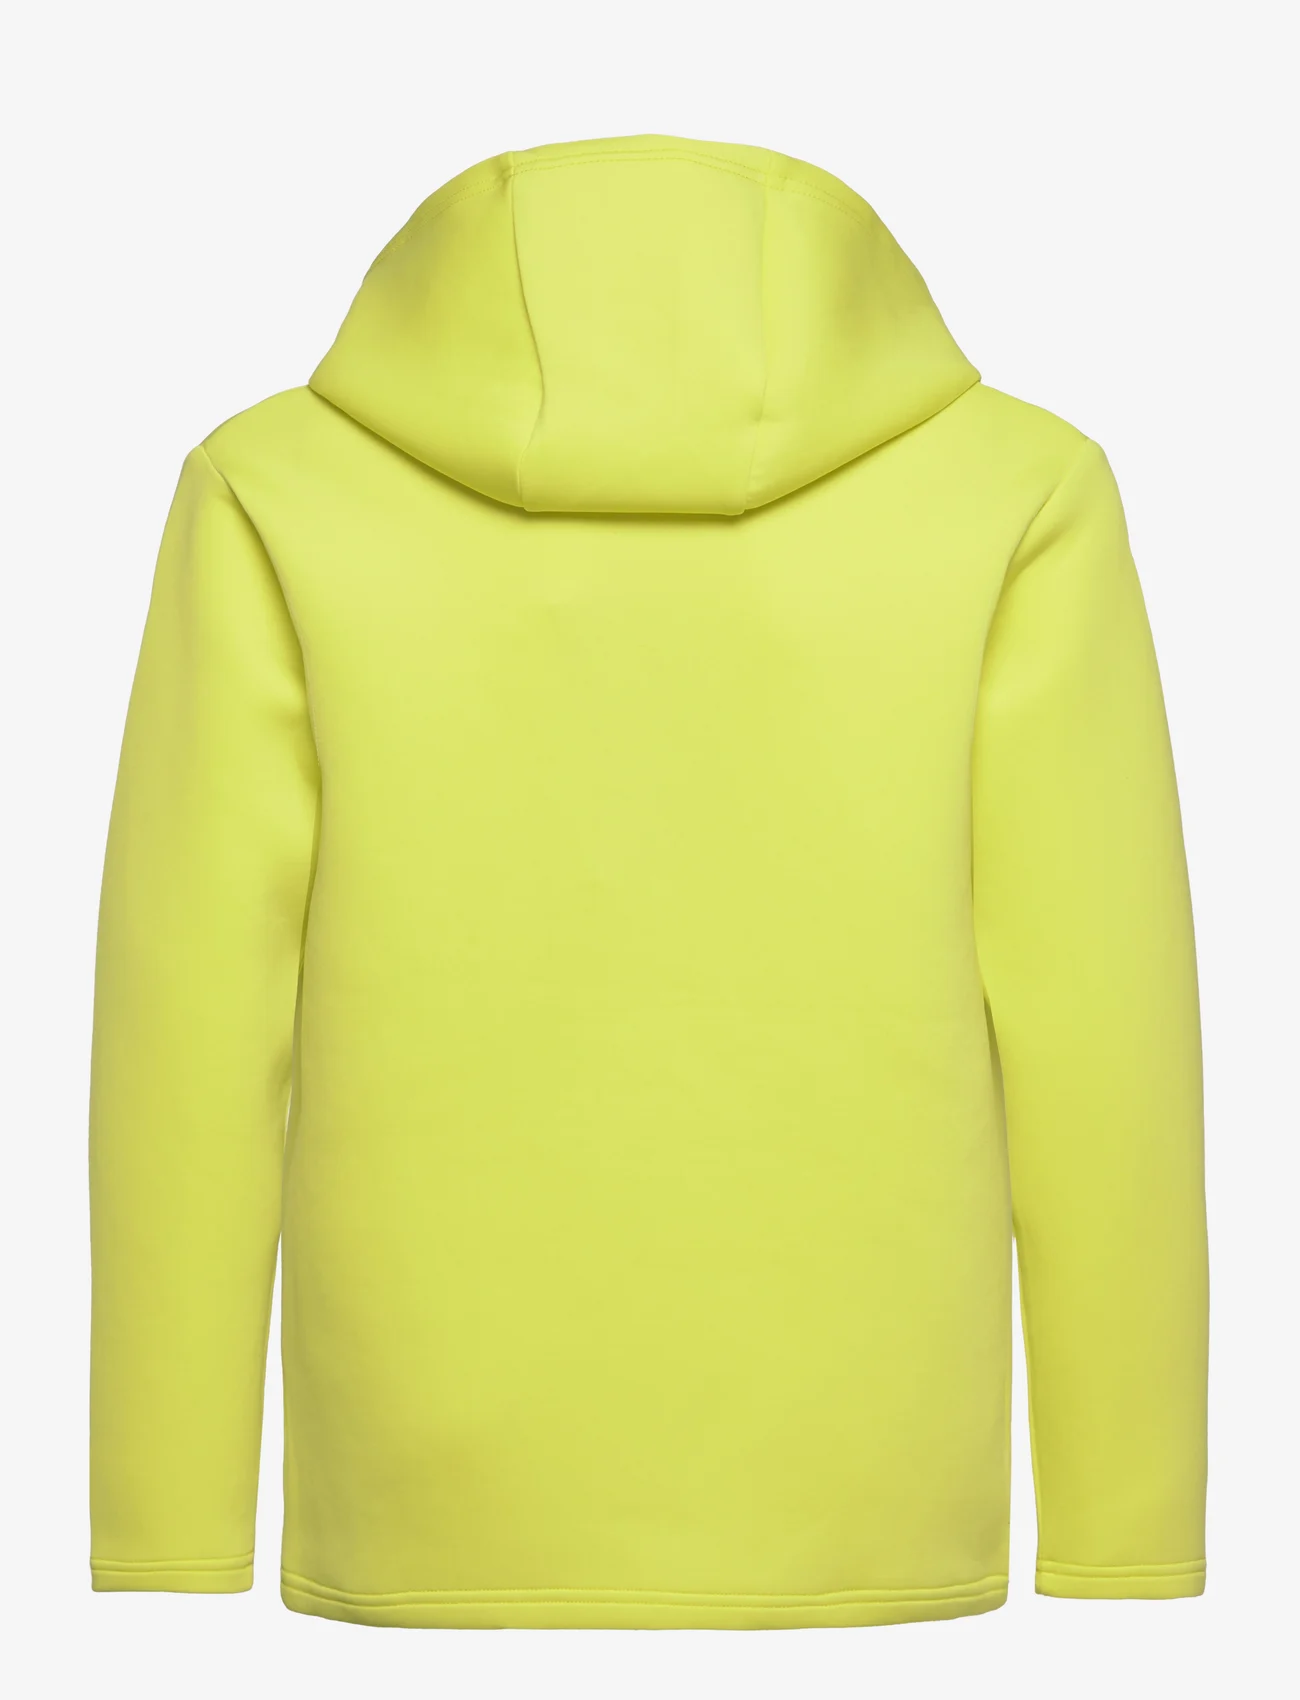 Reima - Sweater, Toimekas - kapuzenpullover - yellow green - 1